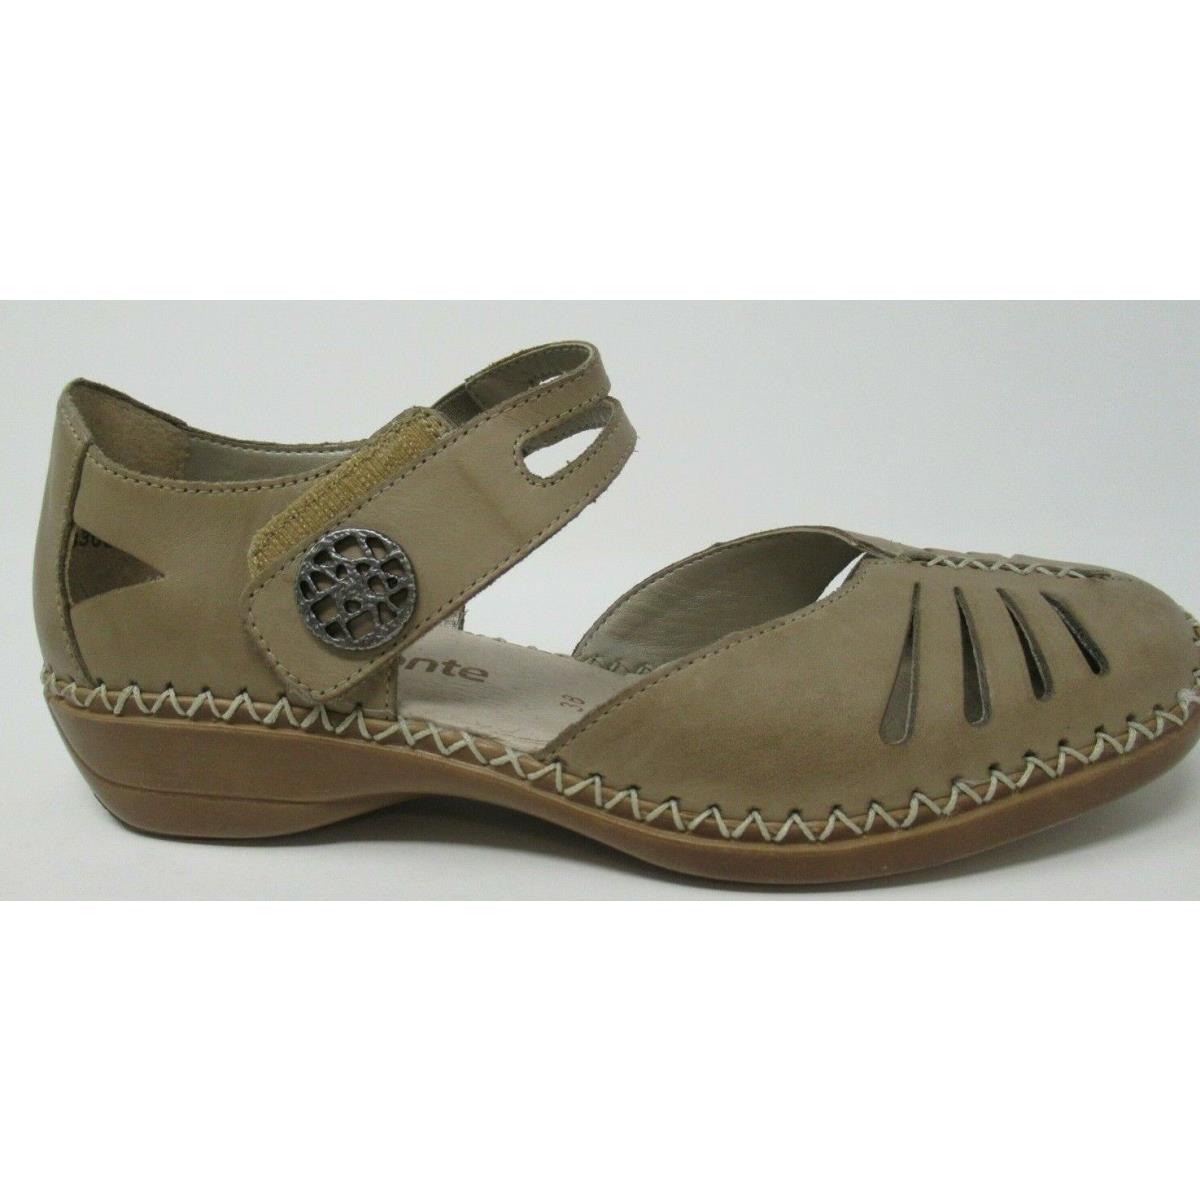 Remonte BY Rieker Women`s D1633 Grey/tan Lea Anklestrap Sandals Shoes 36 US 5.5